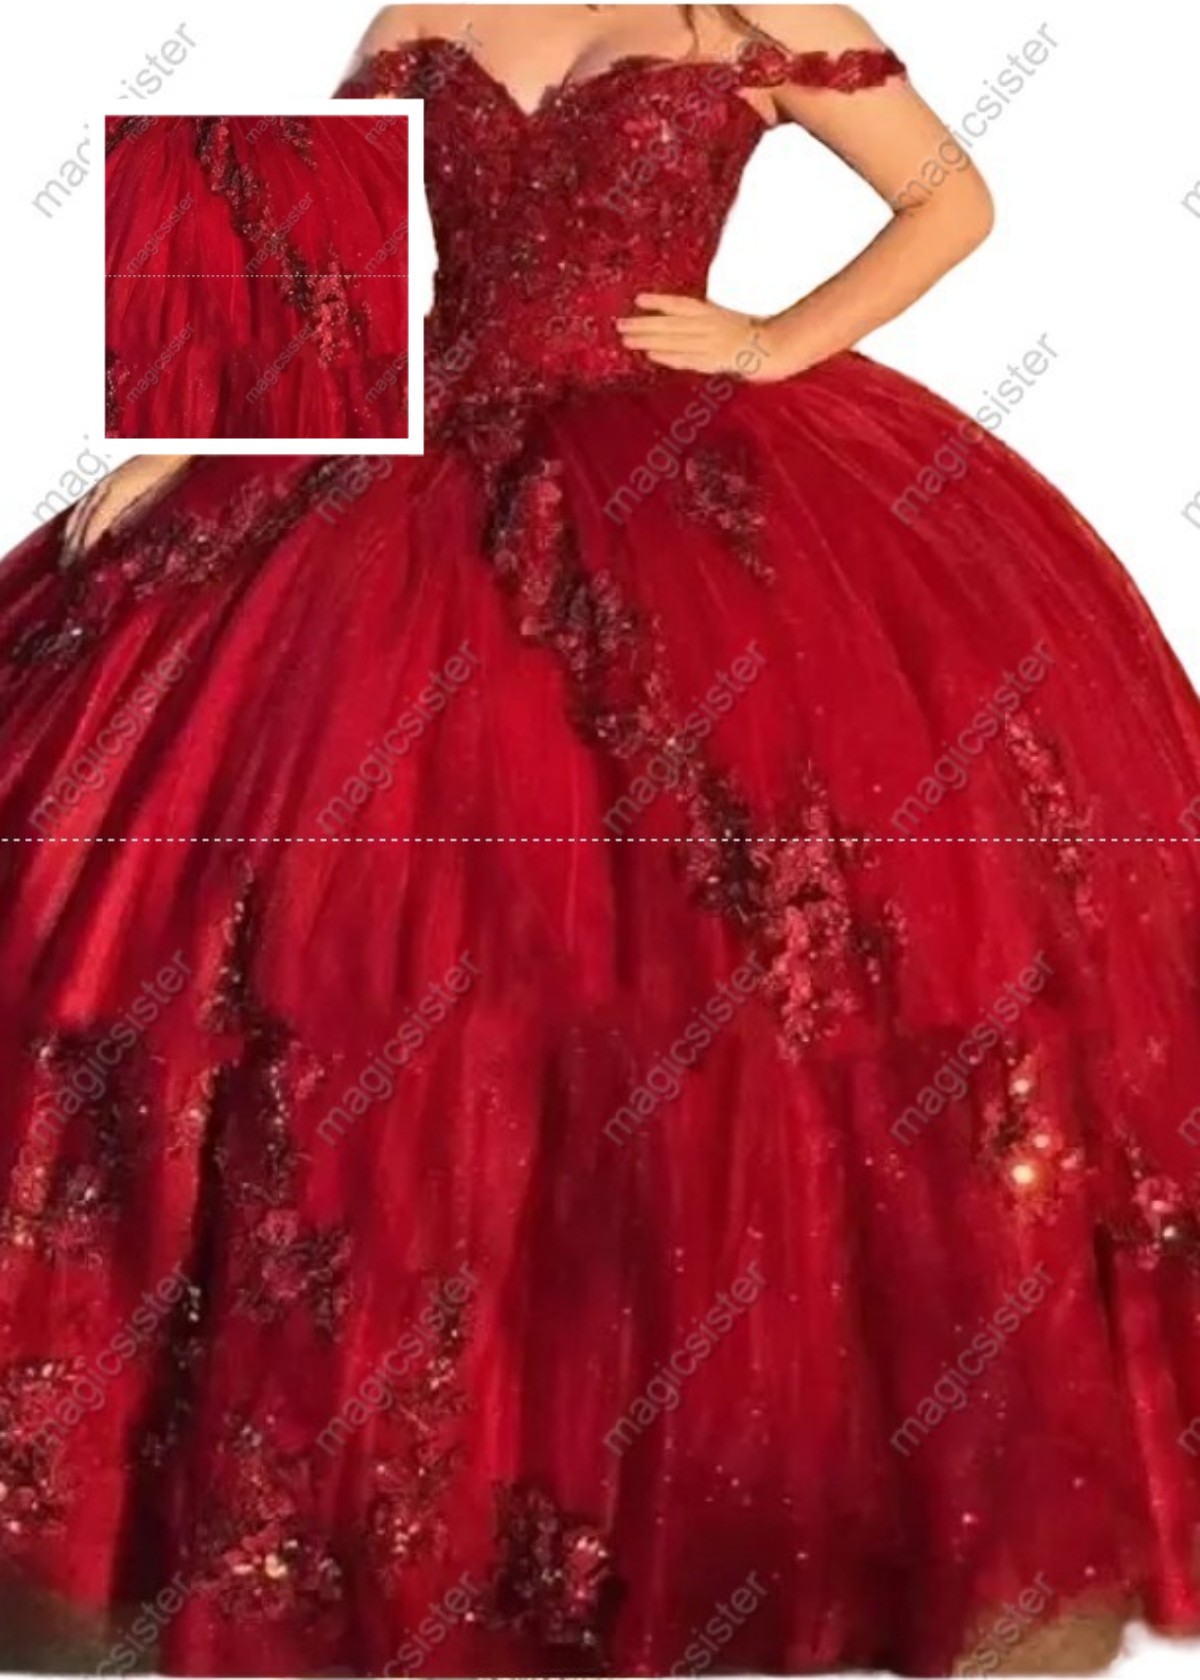 Instock Factory Wholesale 3D Floral Appliques Quinceanera Dress